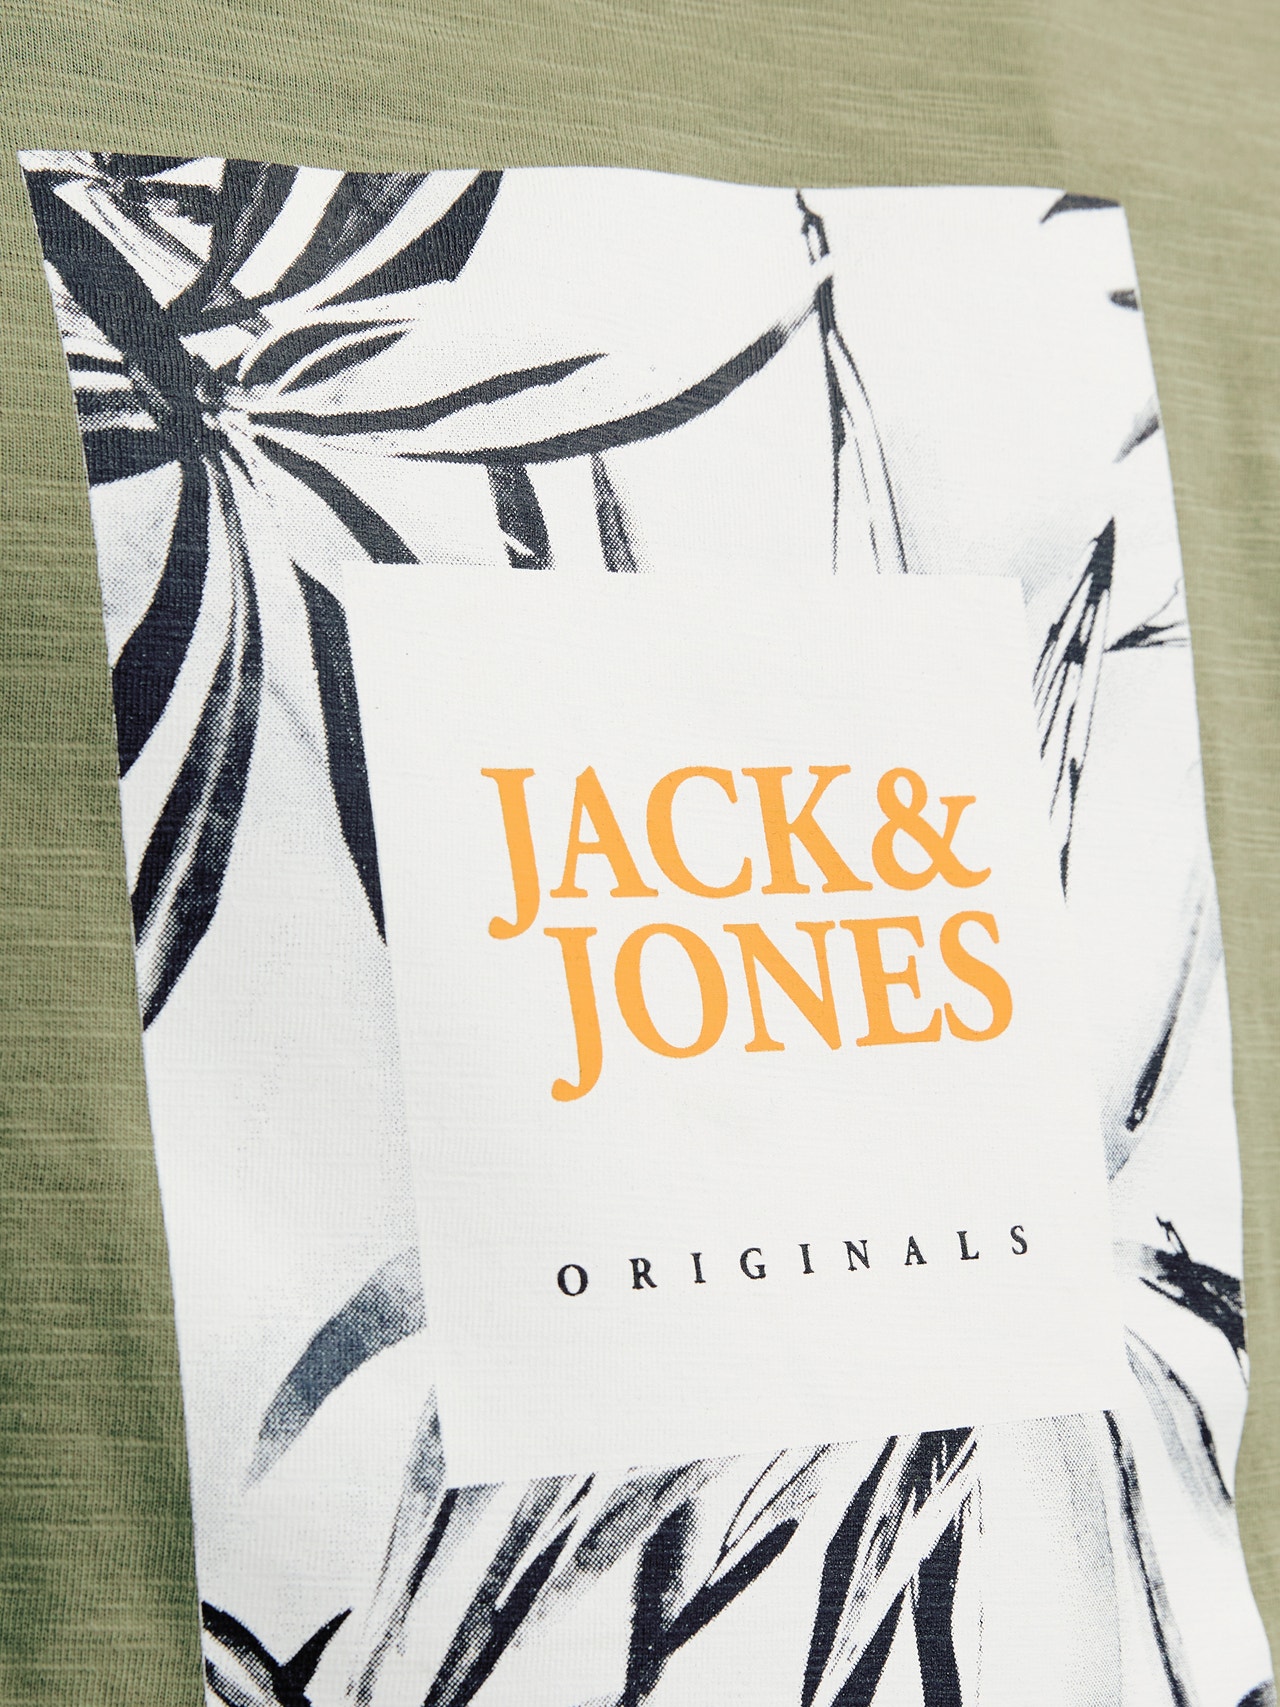 Jack & Jones T-shirt Estampar Para meninos -Oil Green - 12258234